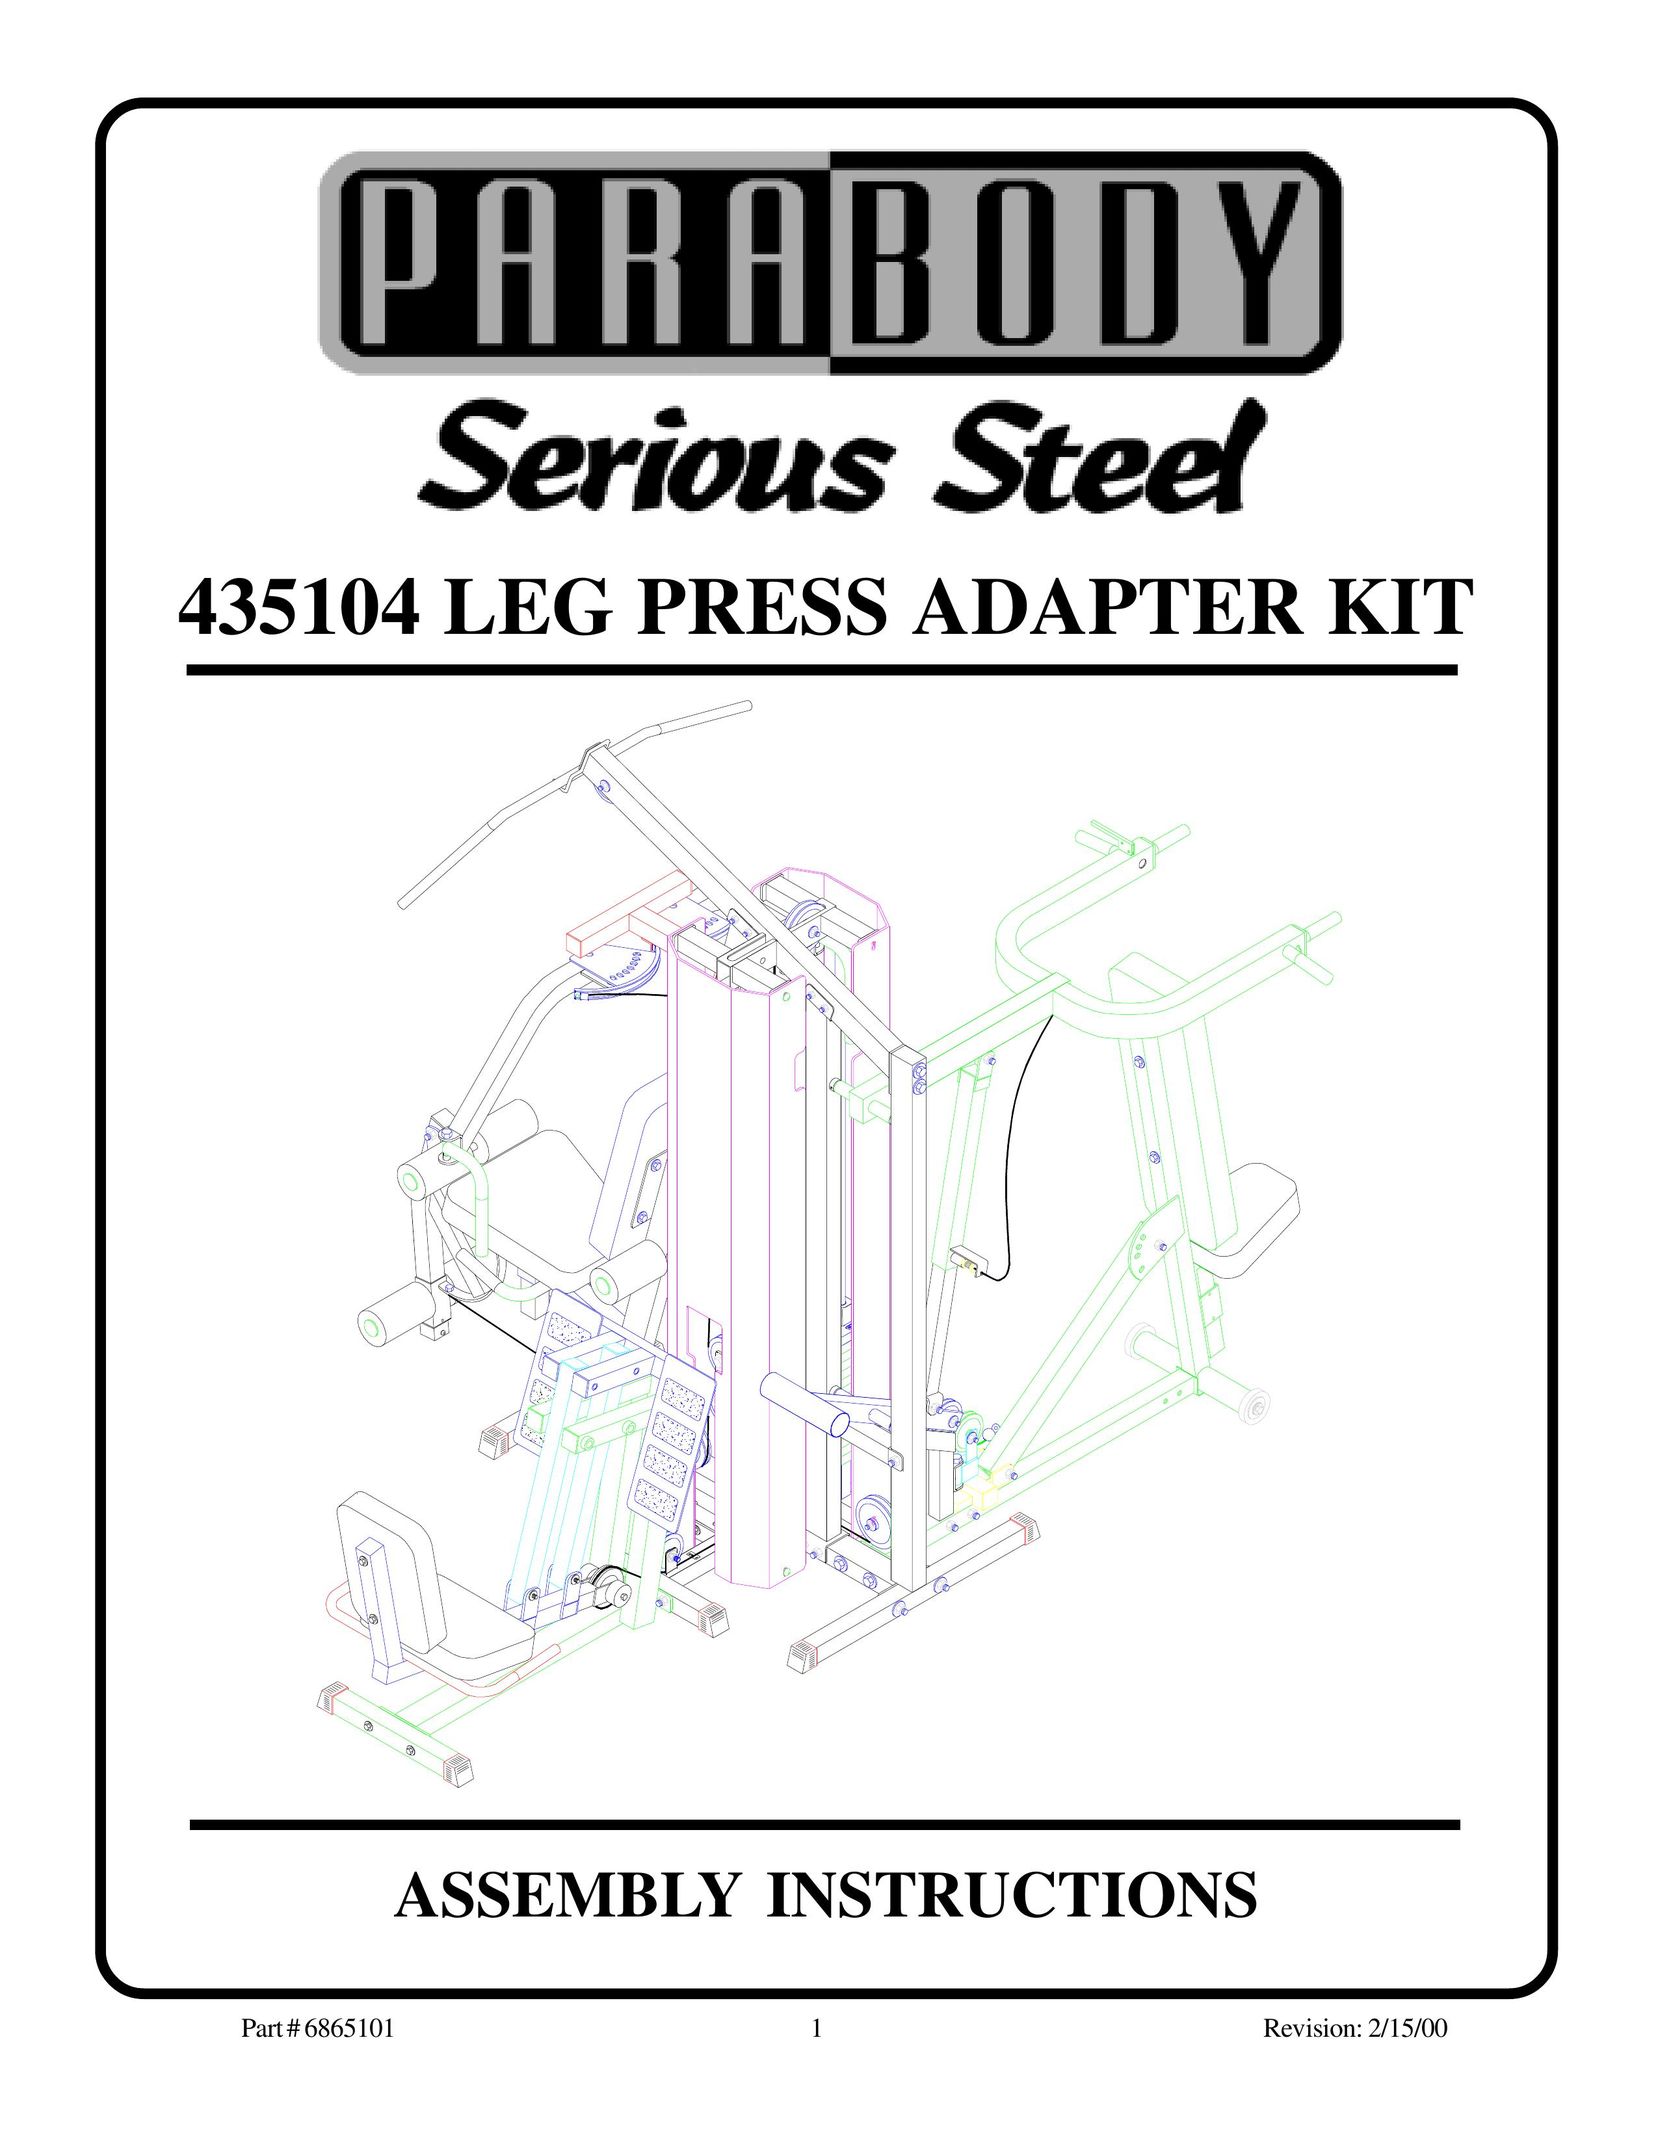 ParaBody 435104 Home Gym User Manual